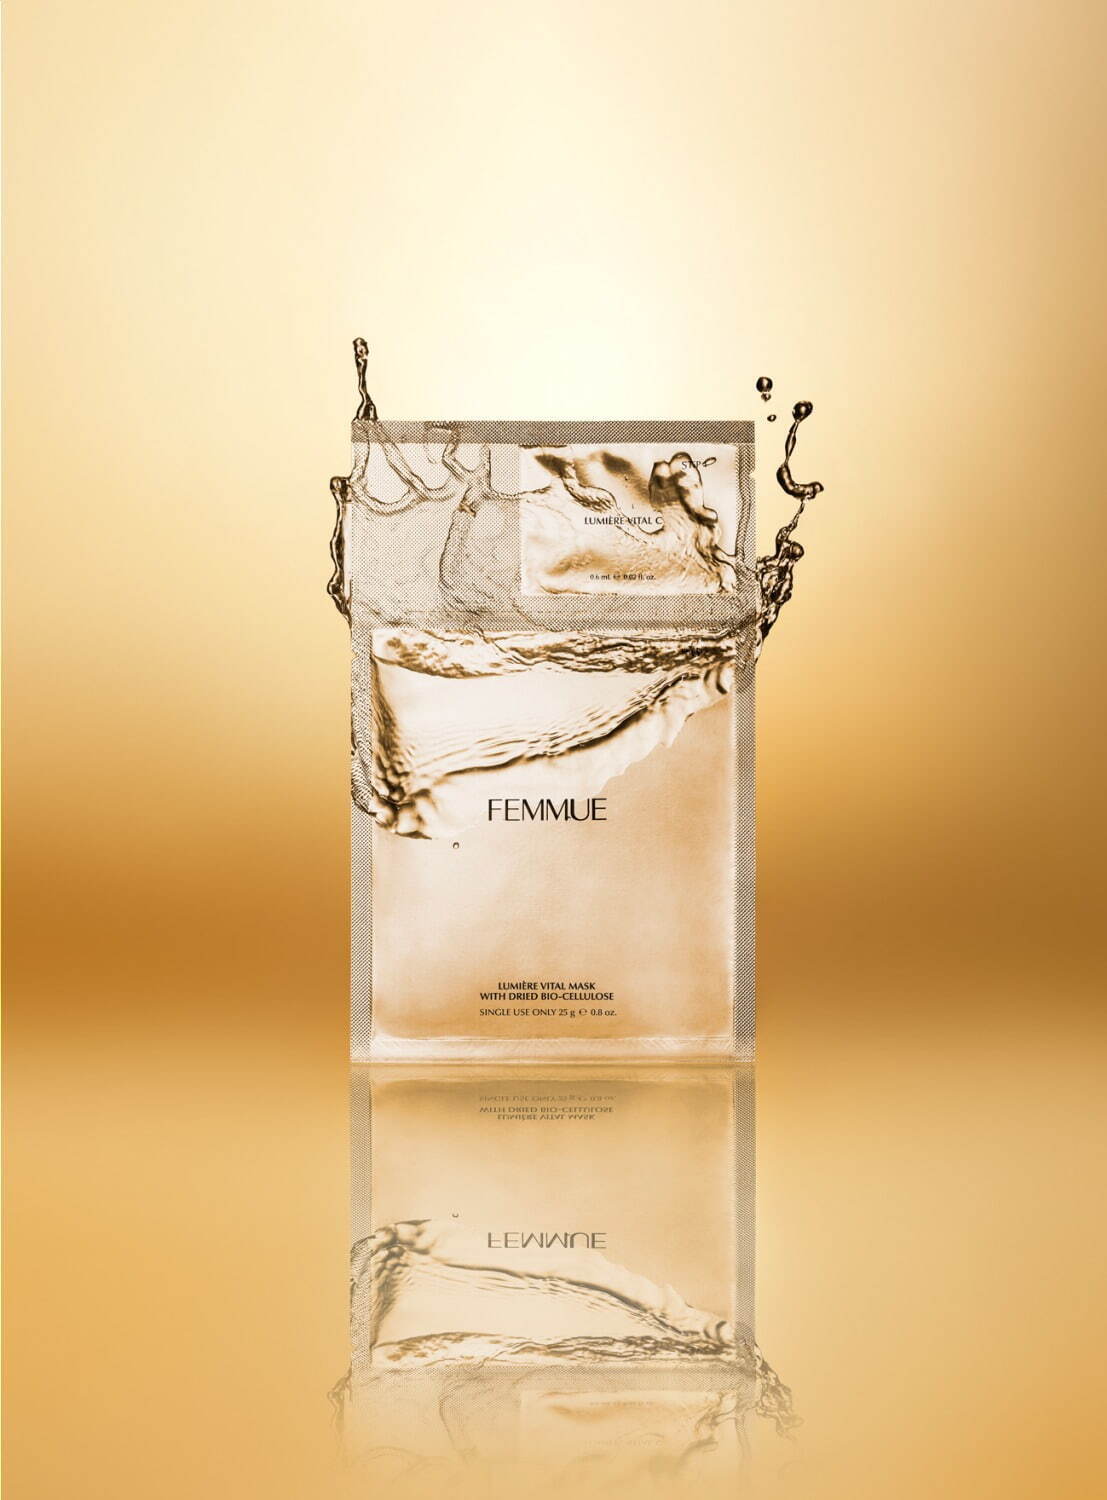 「ルミエール ヴァイタルマスク」ルミエールヴァイタルC [クリア肌&導入美容液] 0.6mLとのセット)×5袋入 4,840円